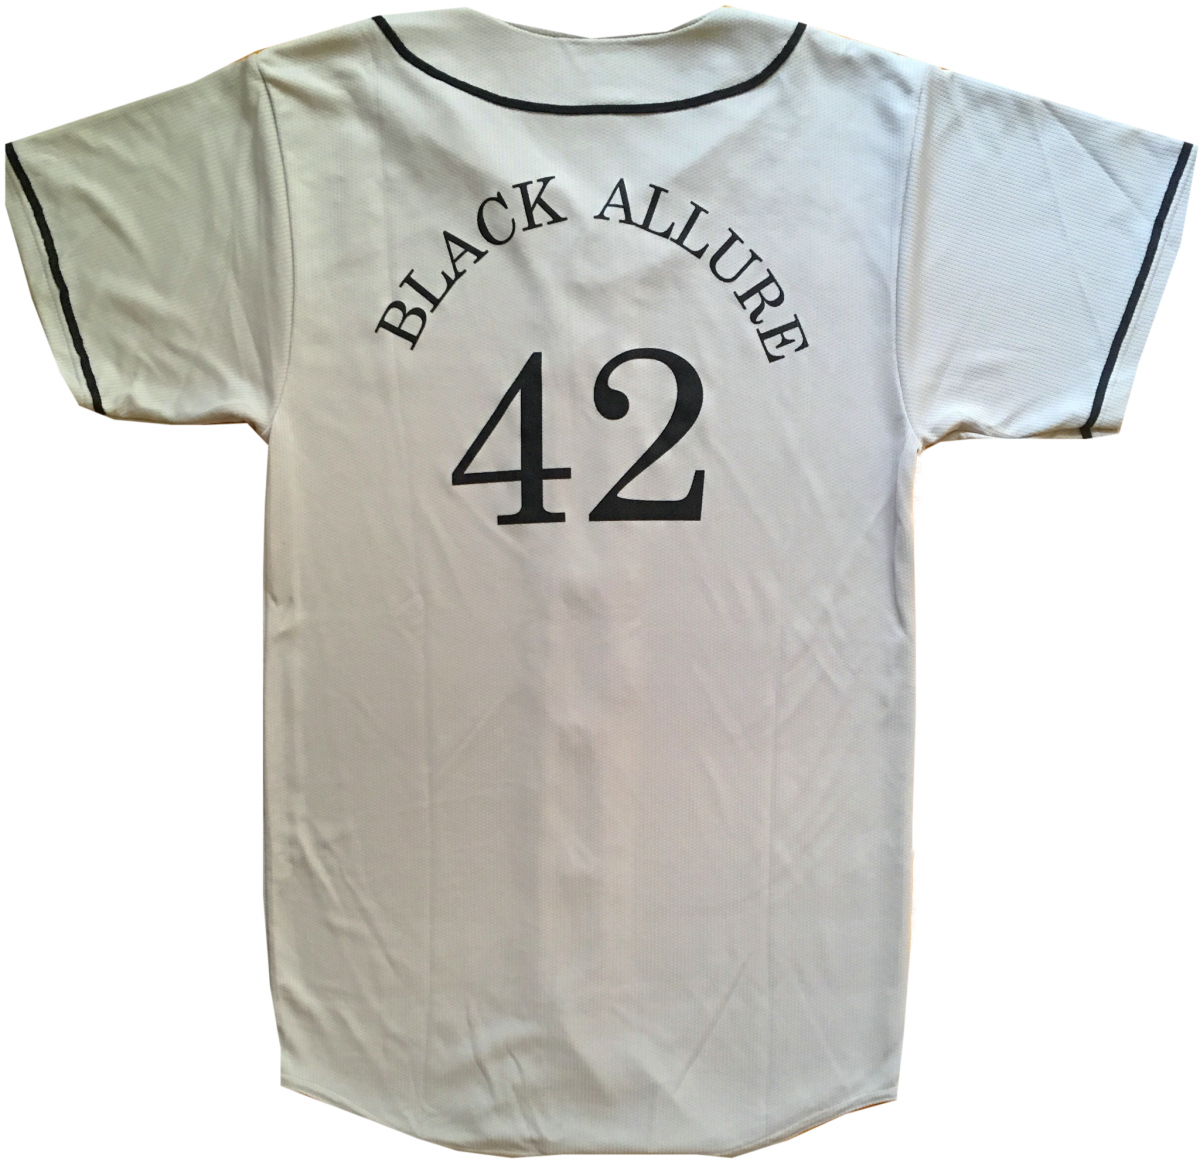 Black Allure Baseball Jersey Sliver
